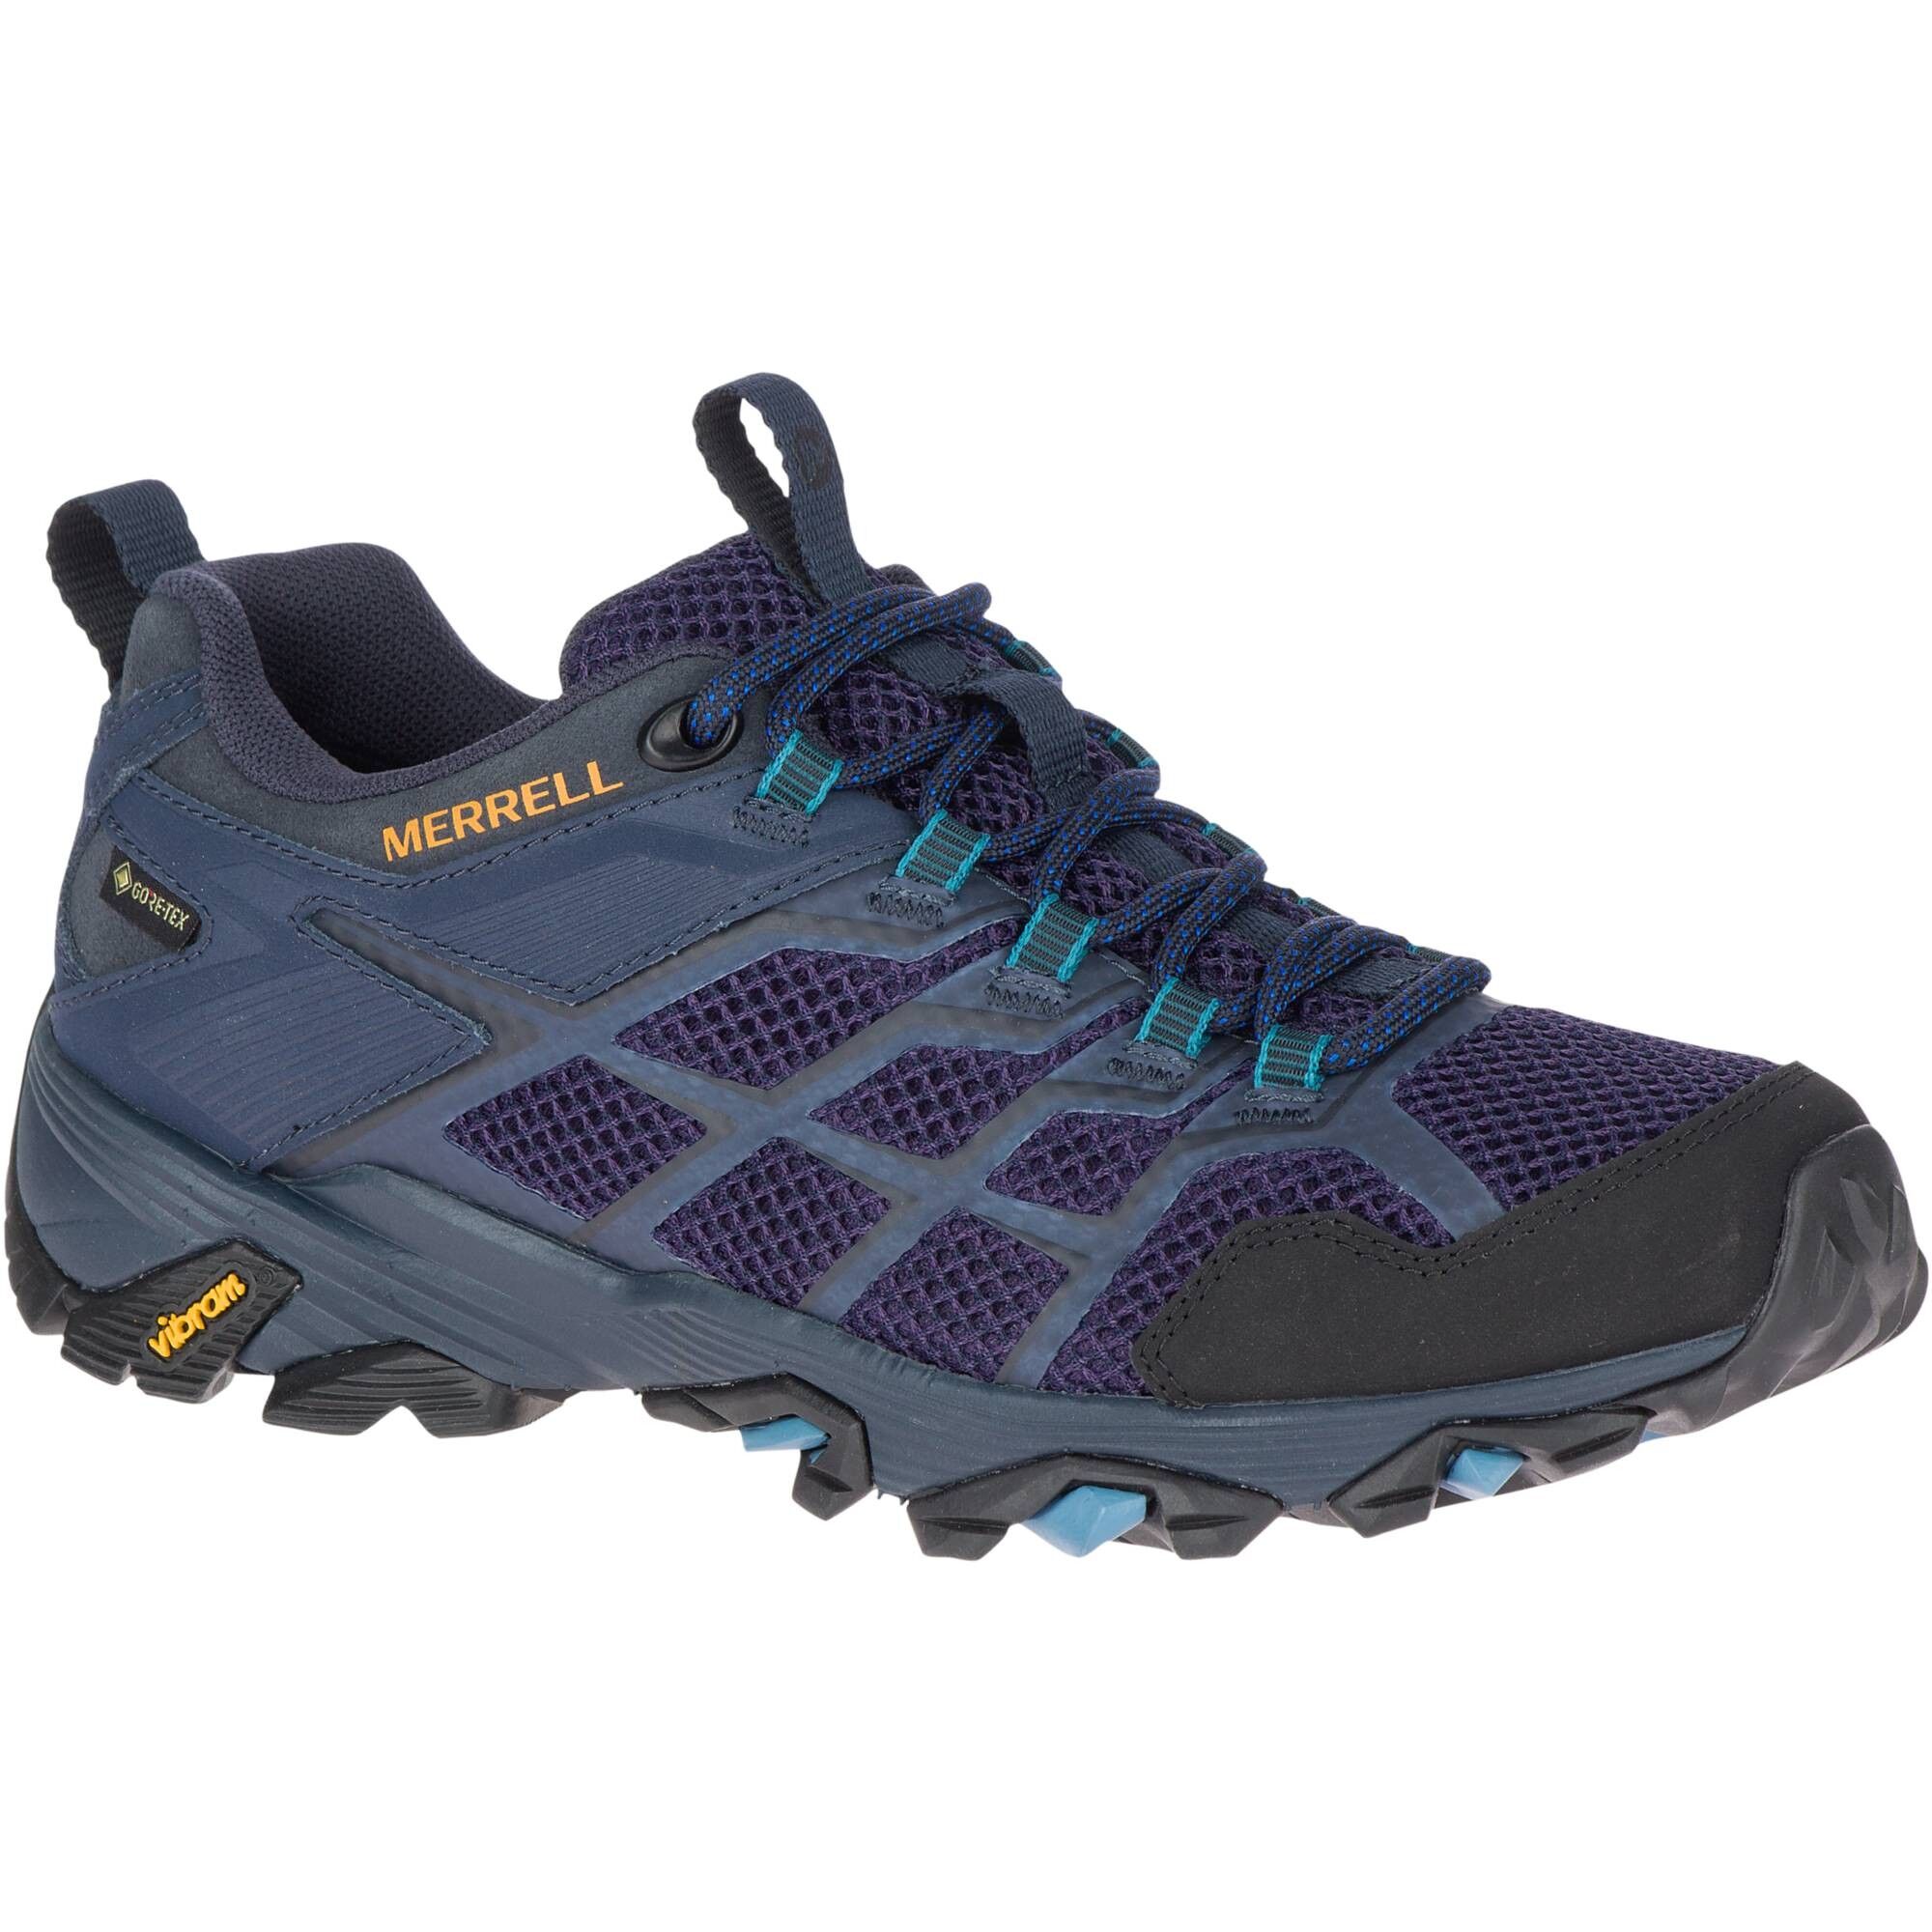 Merrell Moab Fst 2 GTX - Hiking shoes - Women's